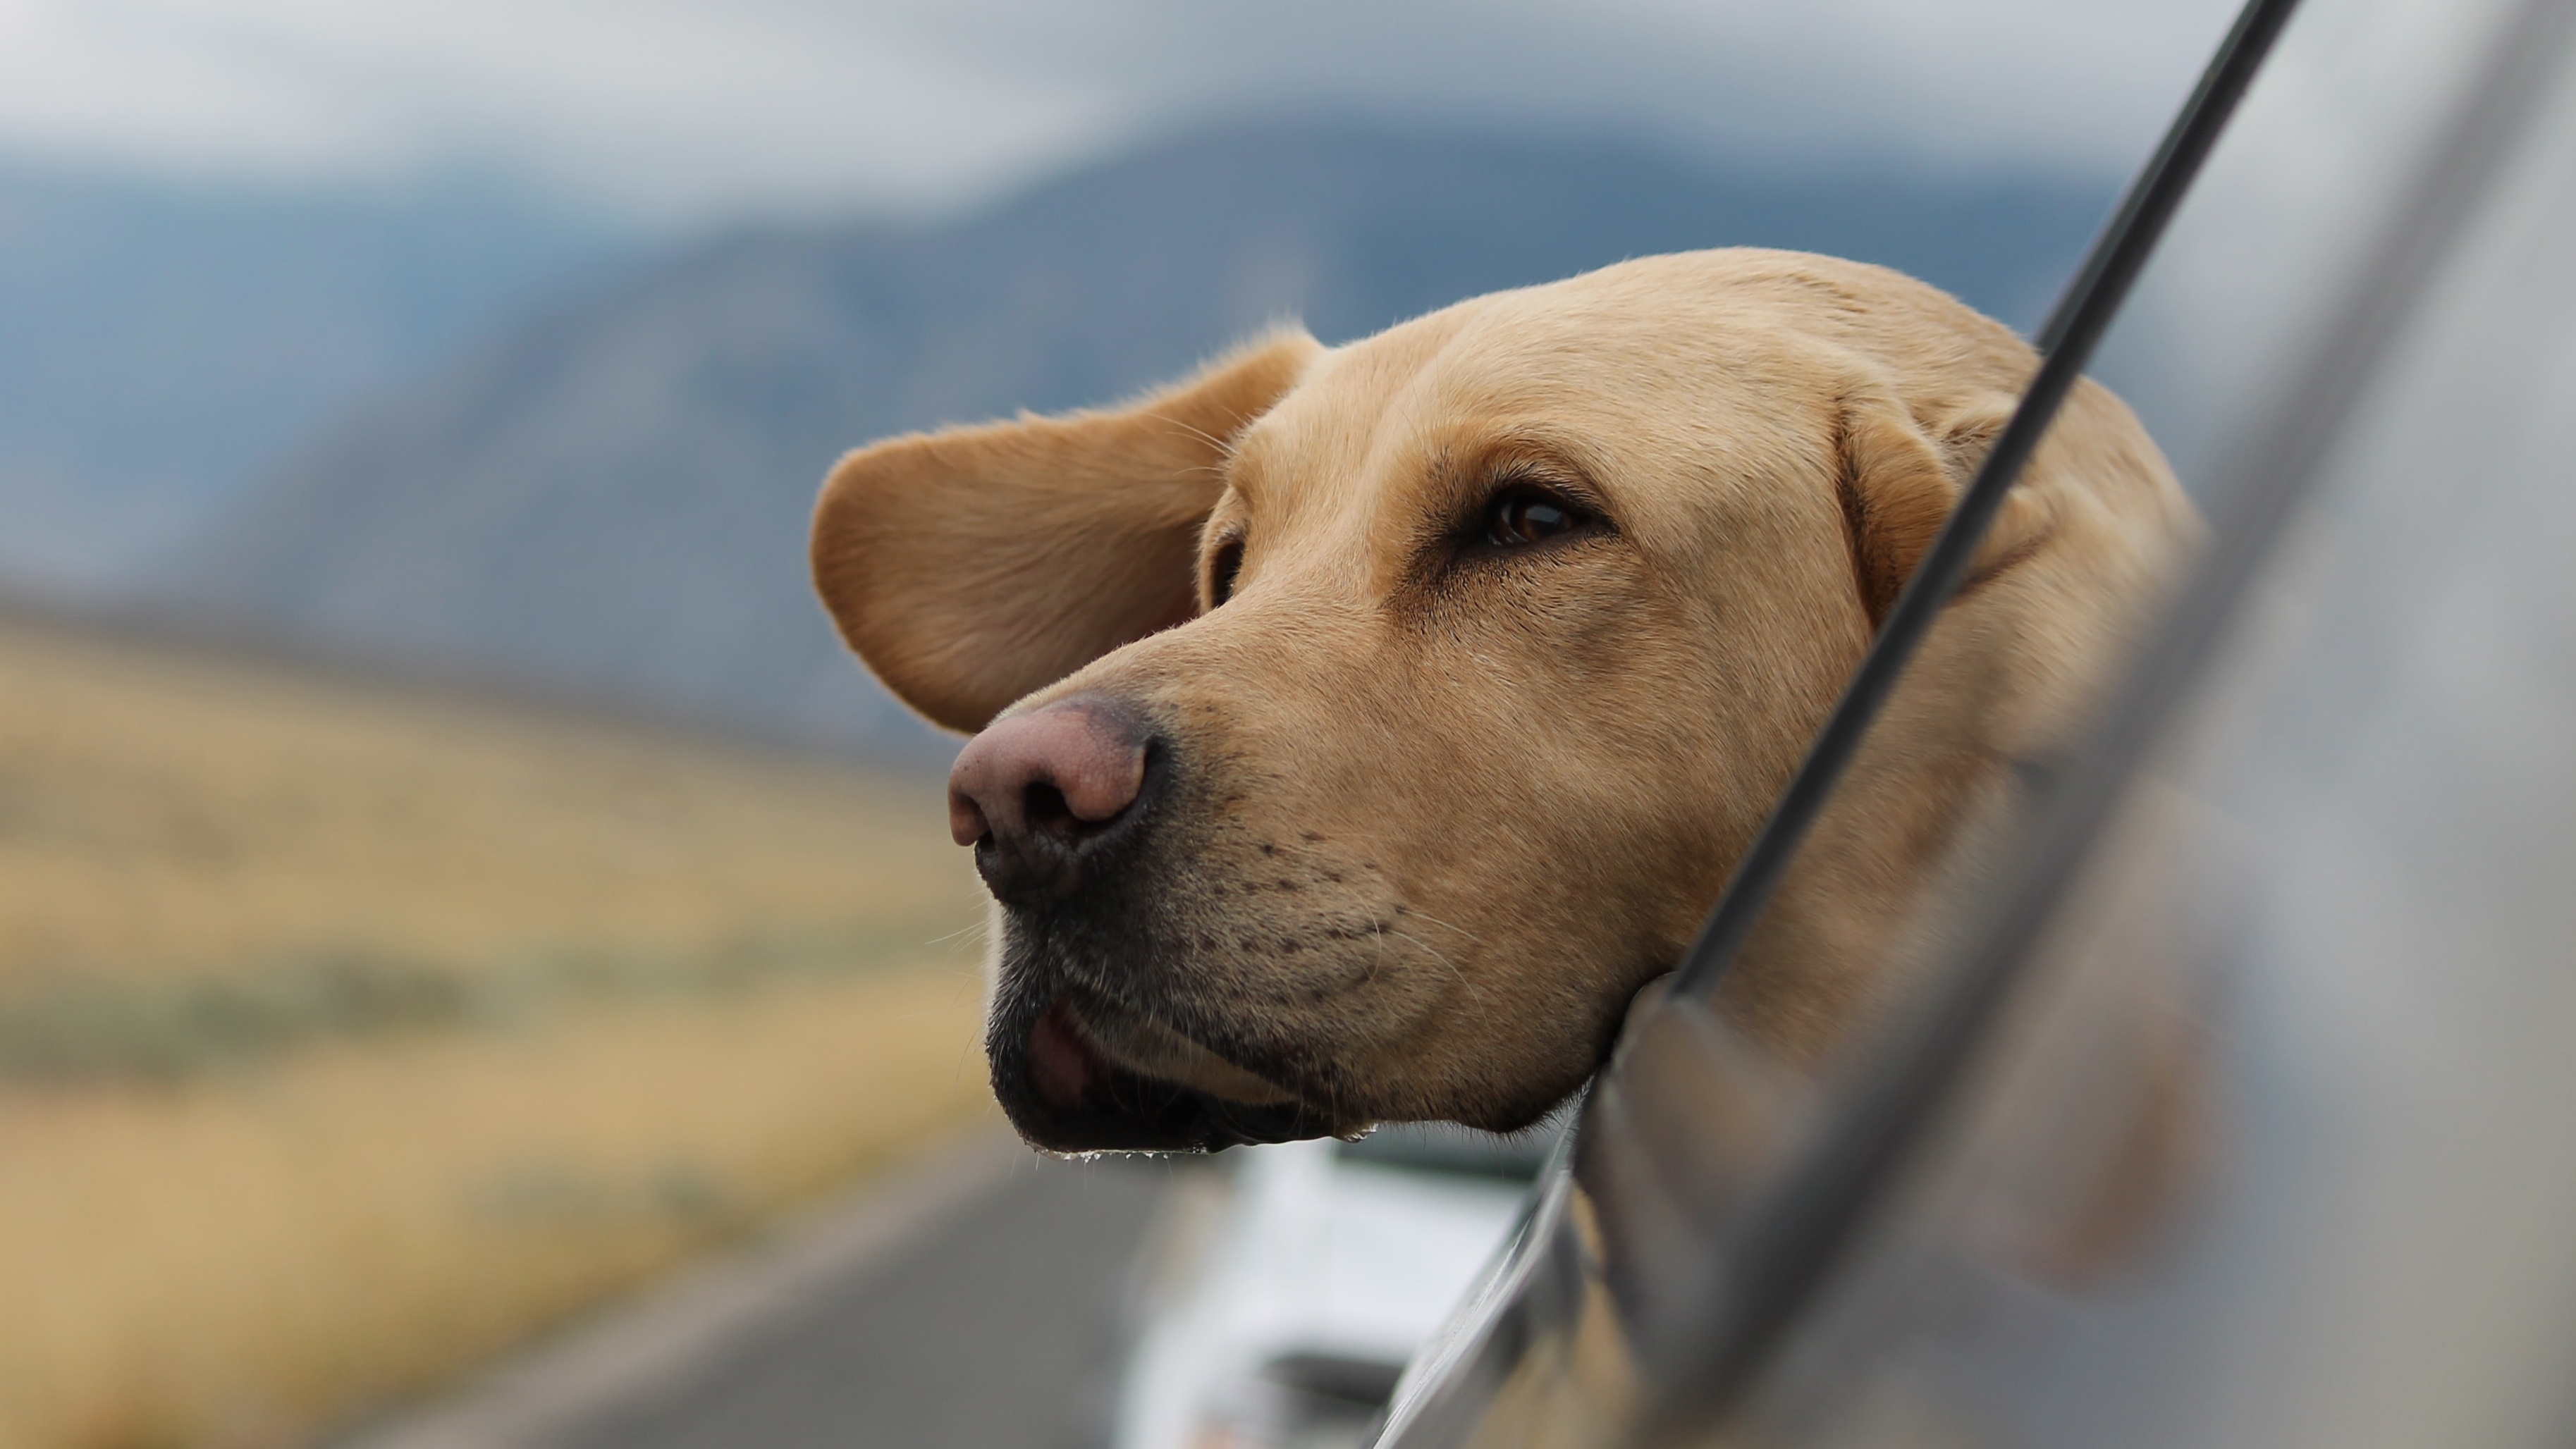 Hund im Auto – Welche rechtlichen Bestimmungen sind zu beachten?